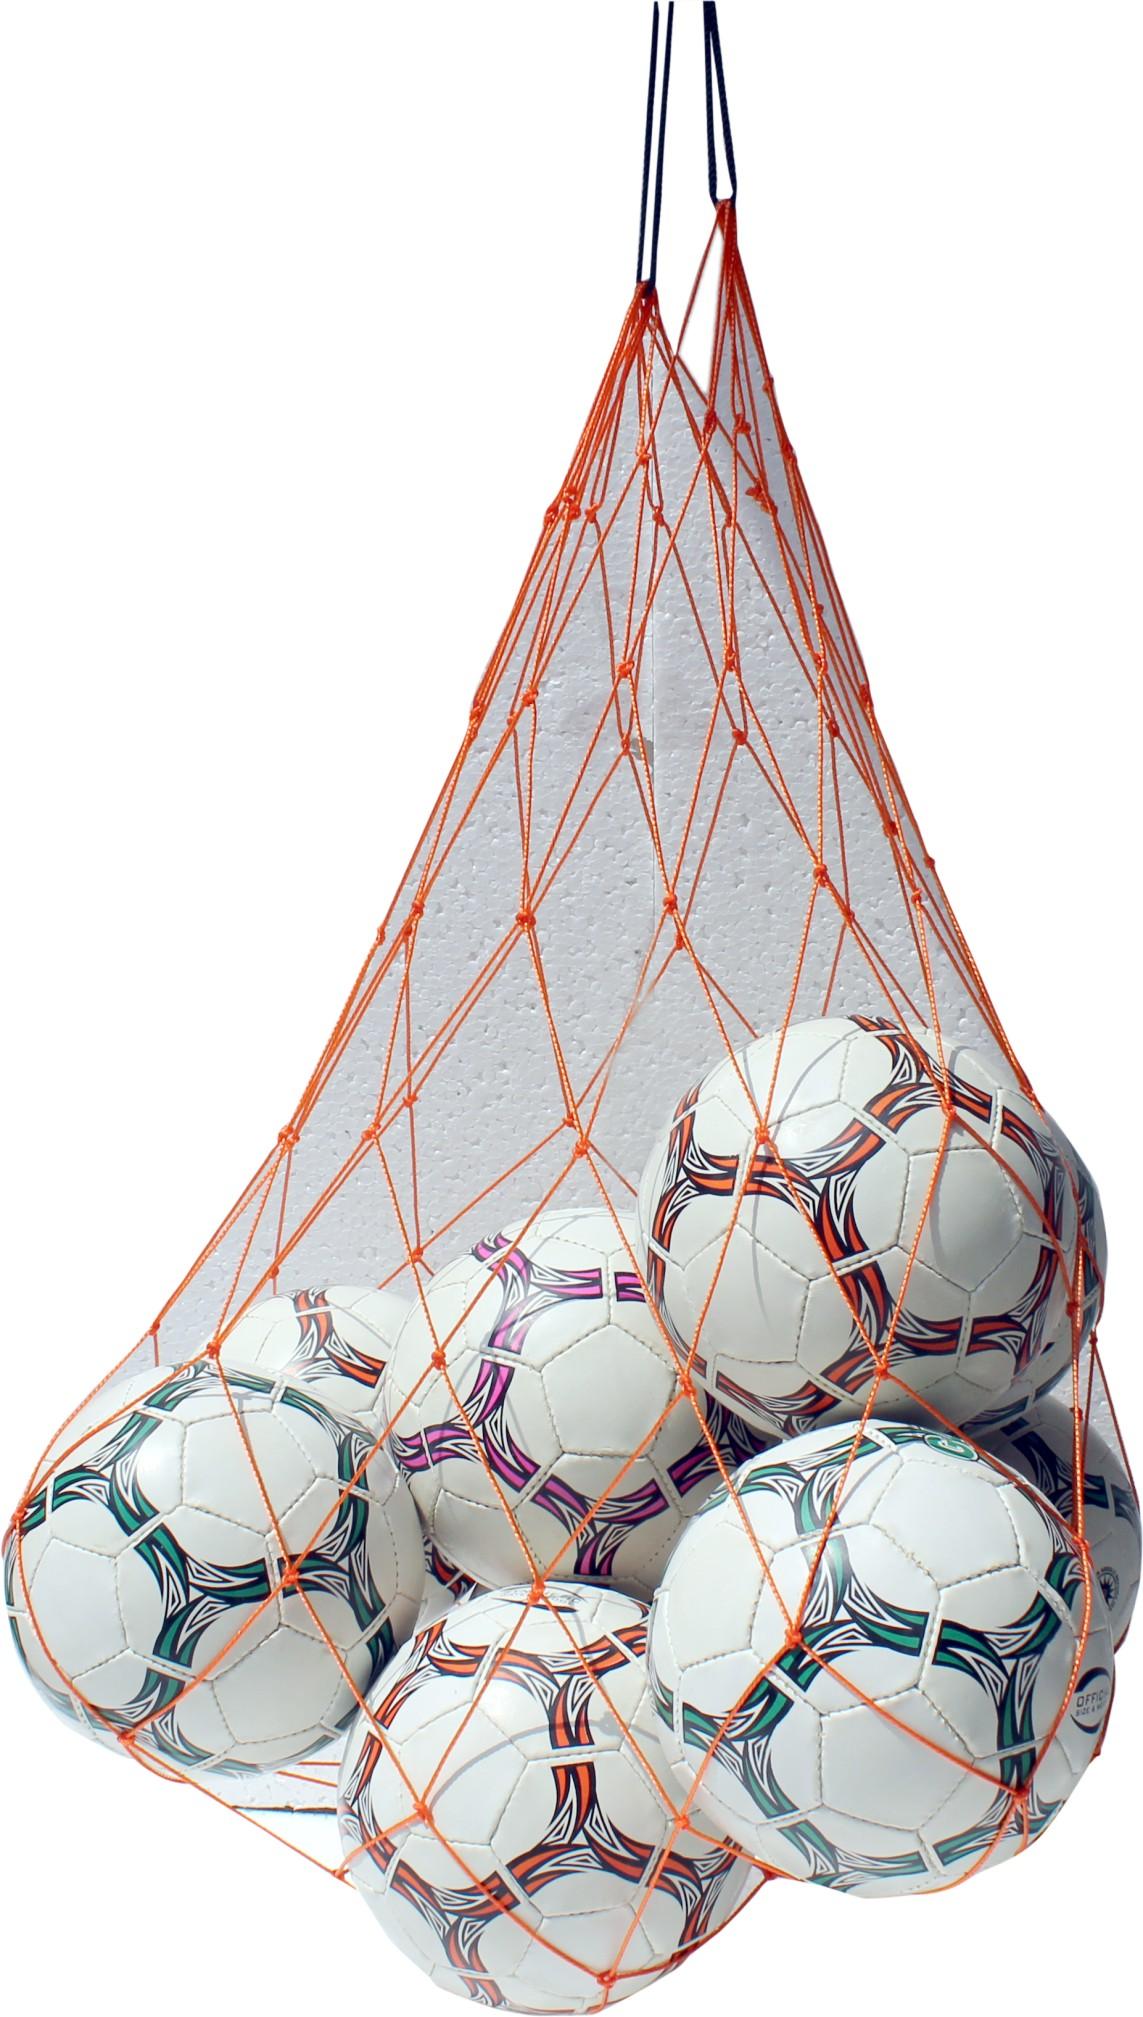 Ball Carrying Net